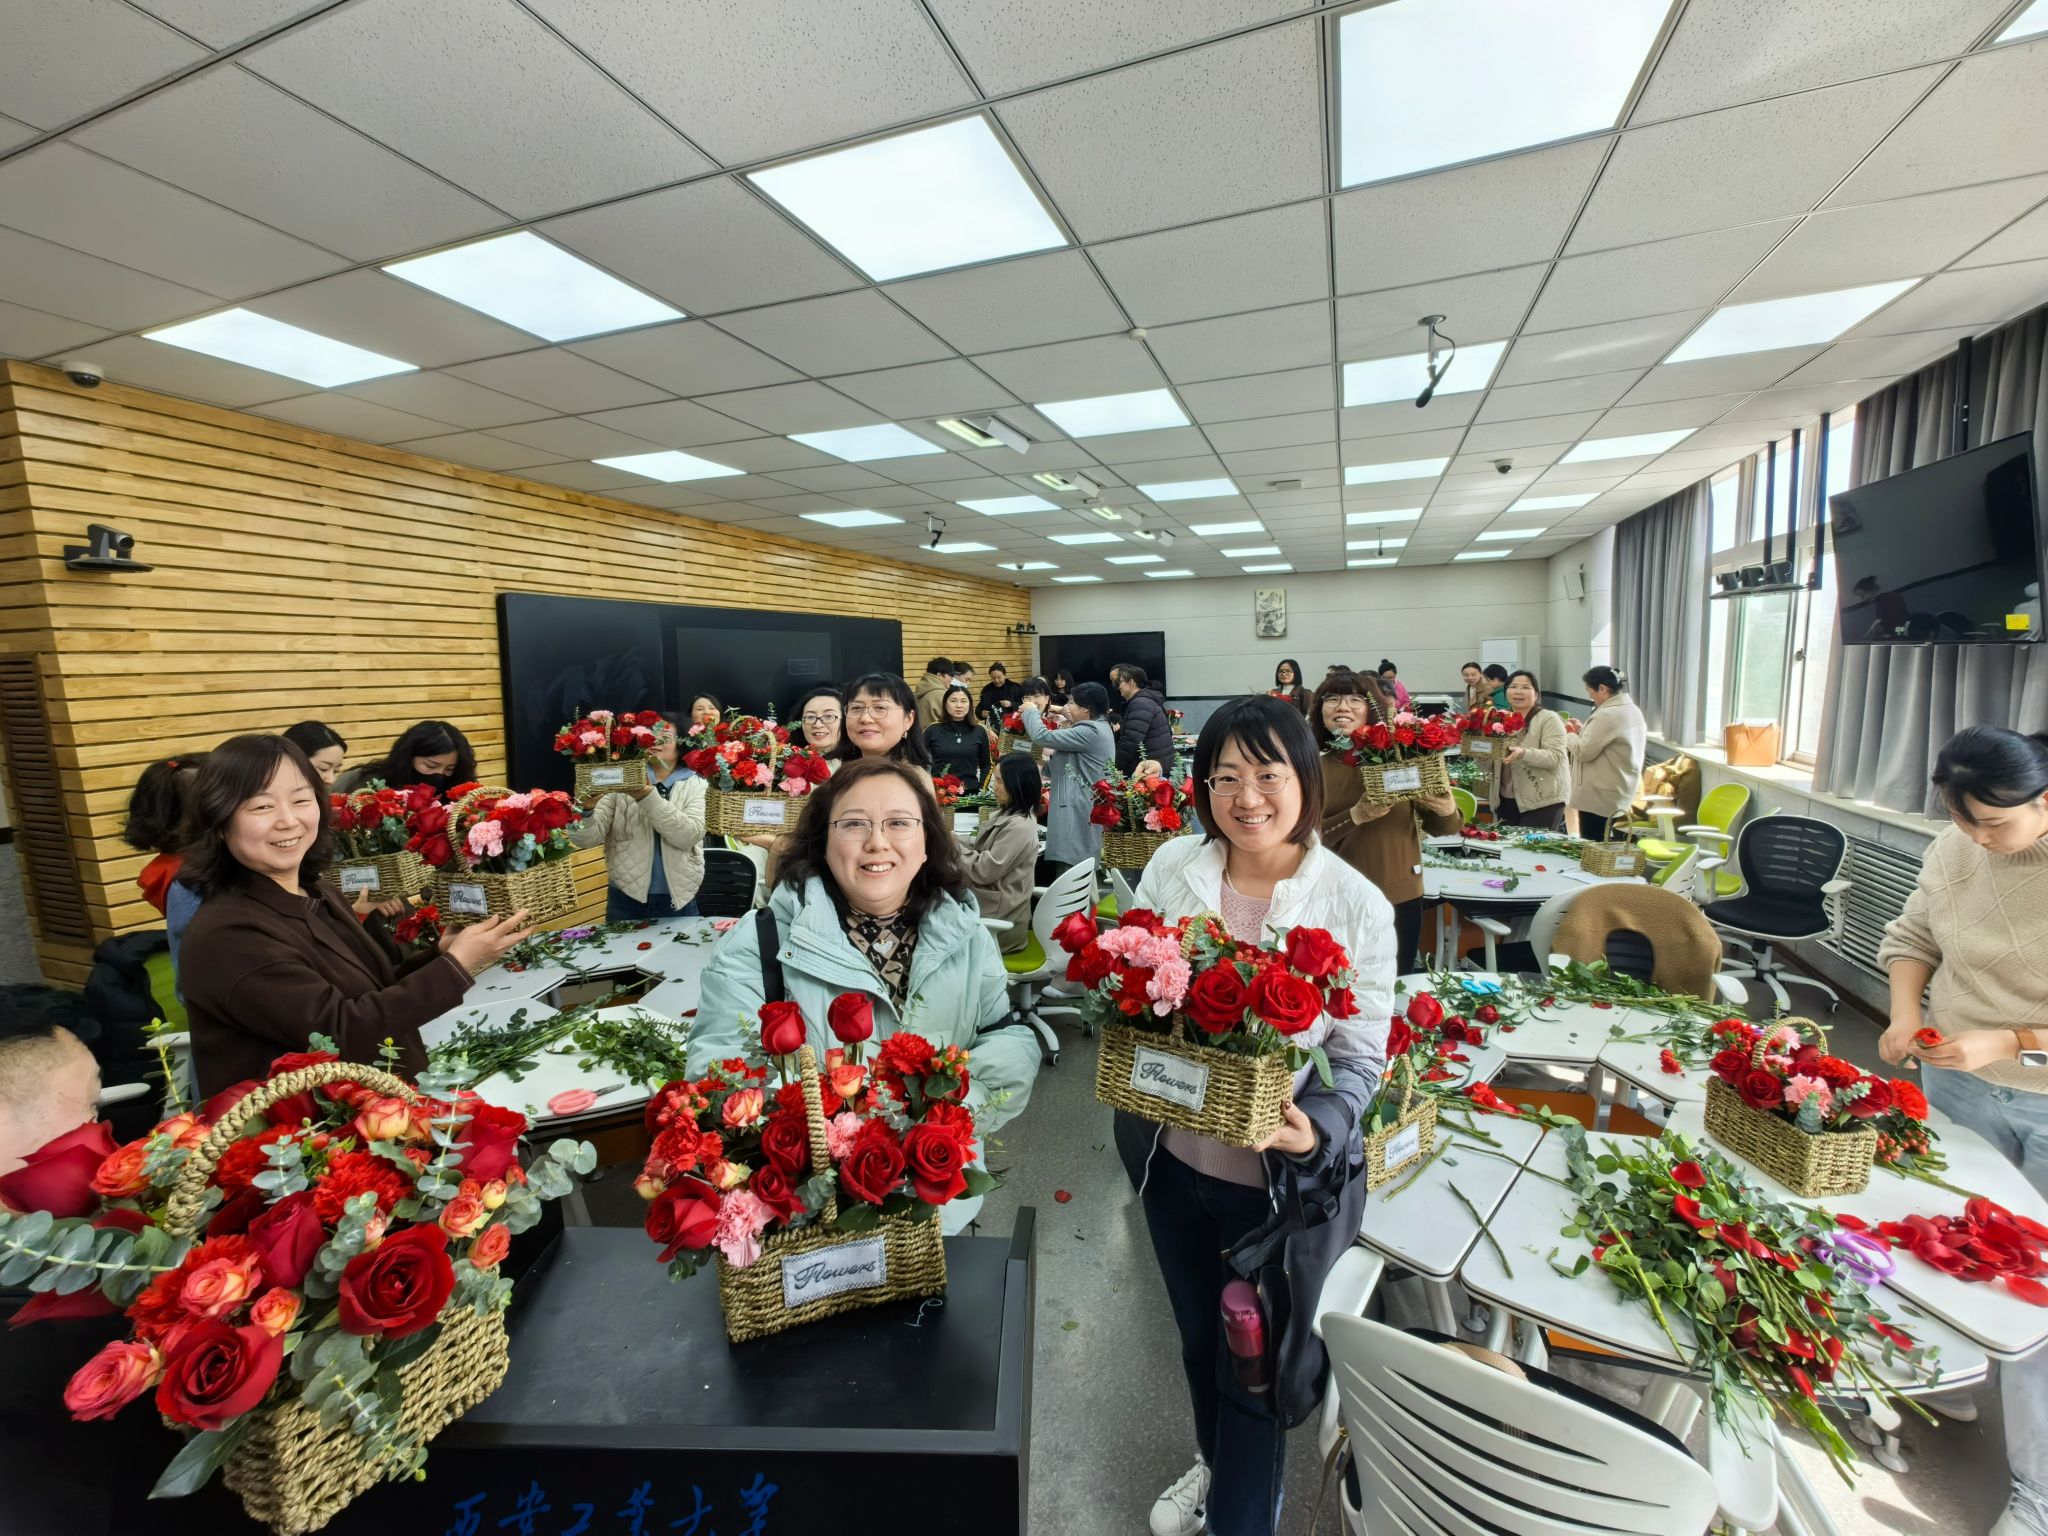 与花相伴·巾帼绽芳华——beat365中国在线体育举办庆祝国际妇女节主题花艺沙龙